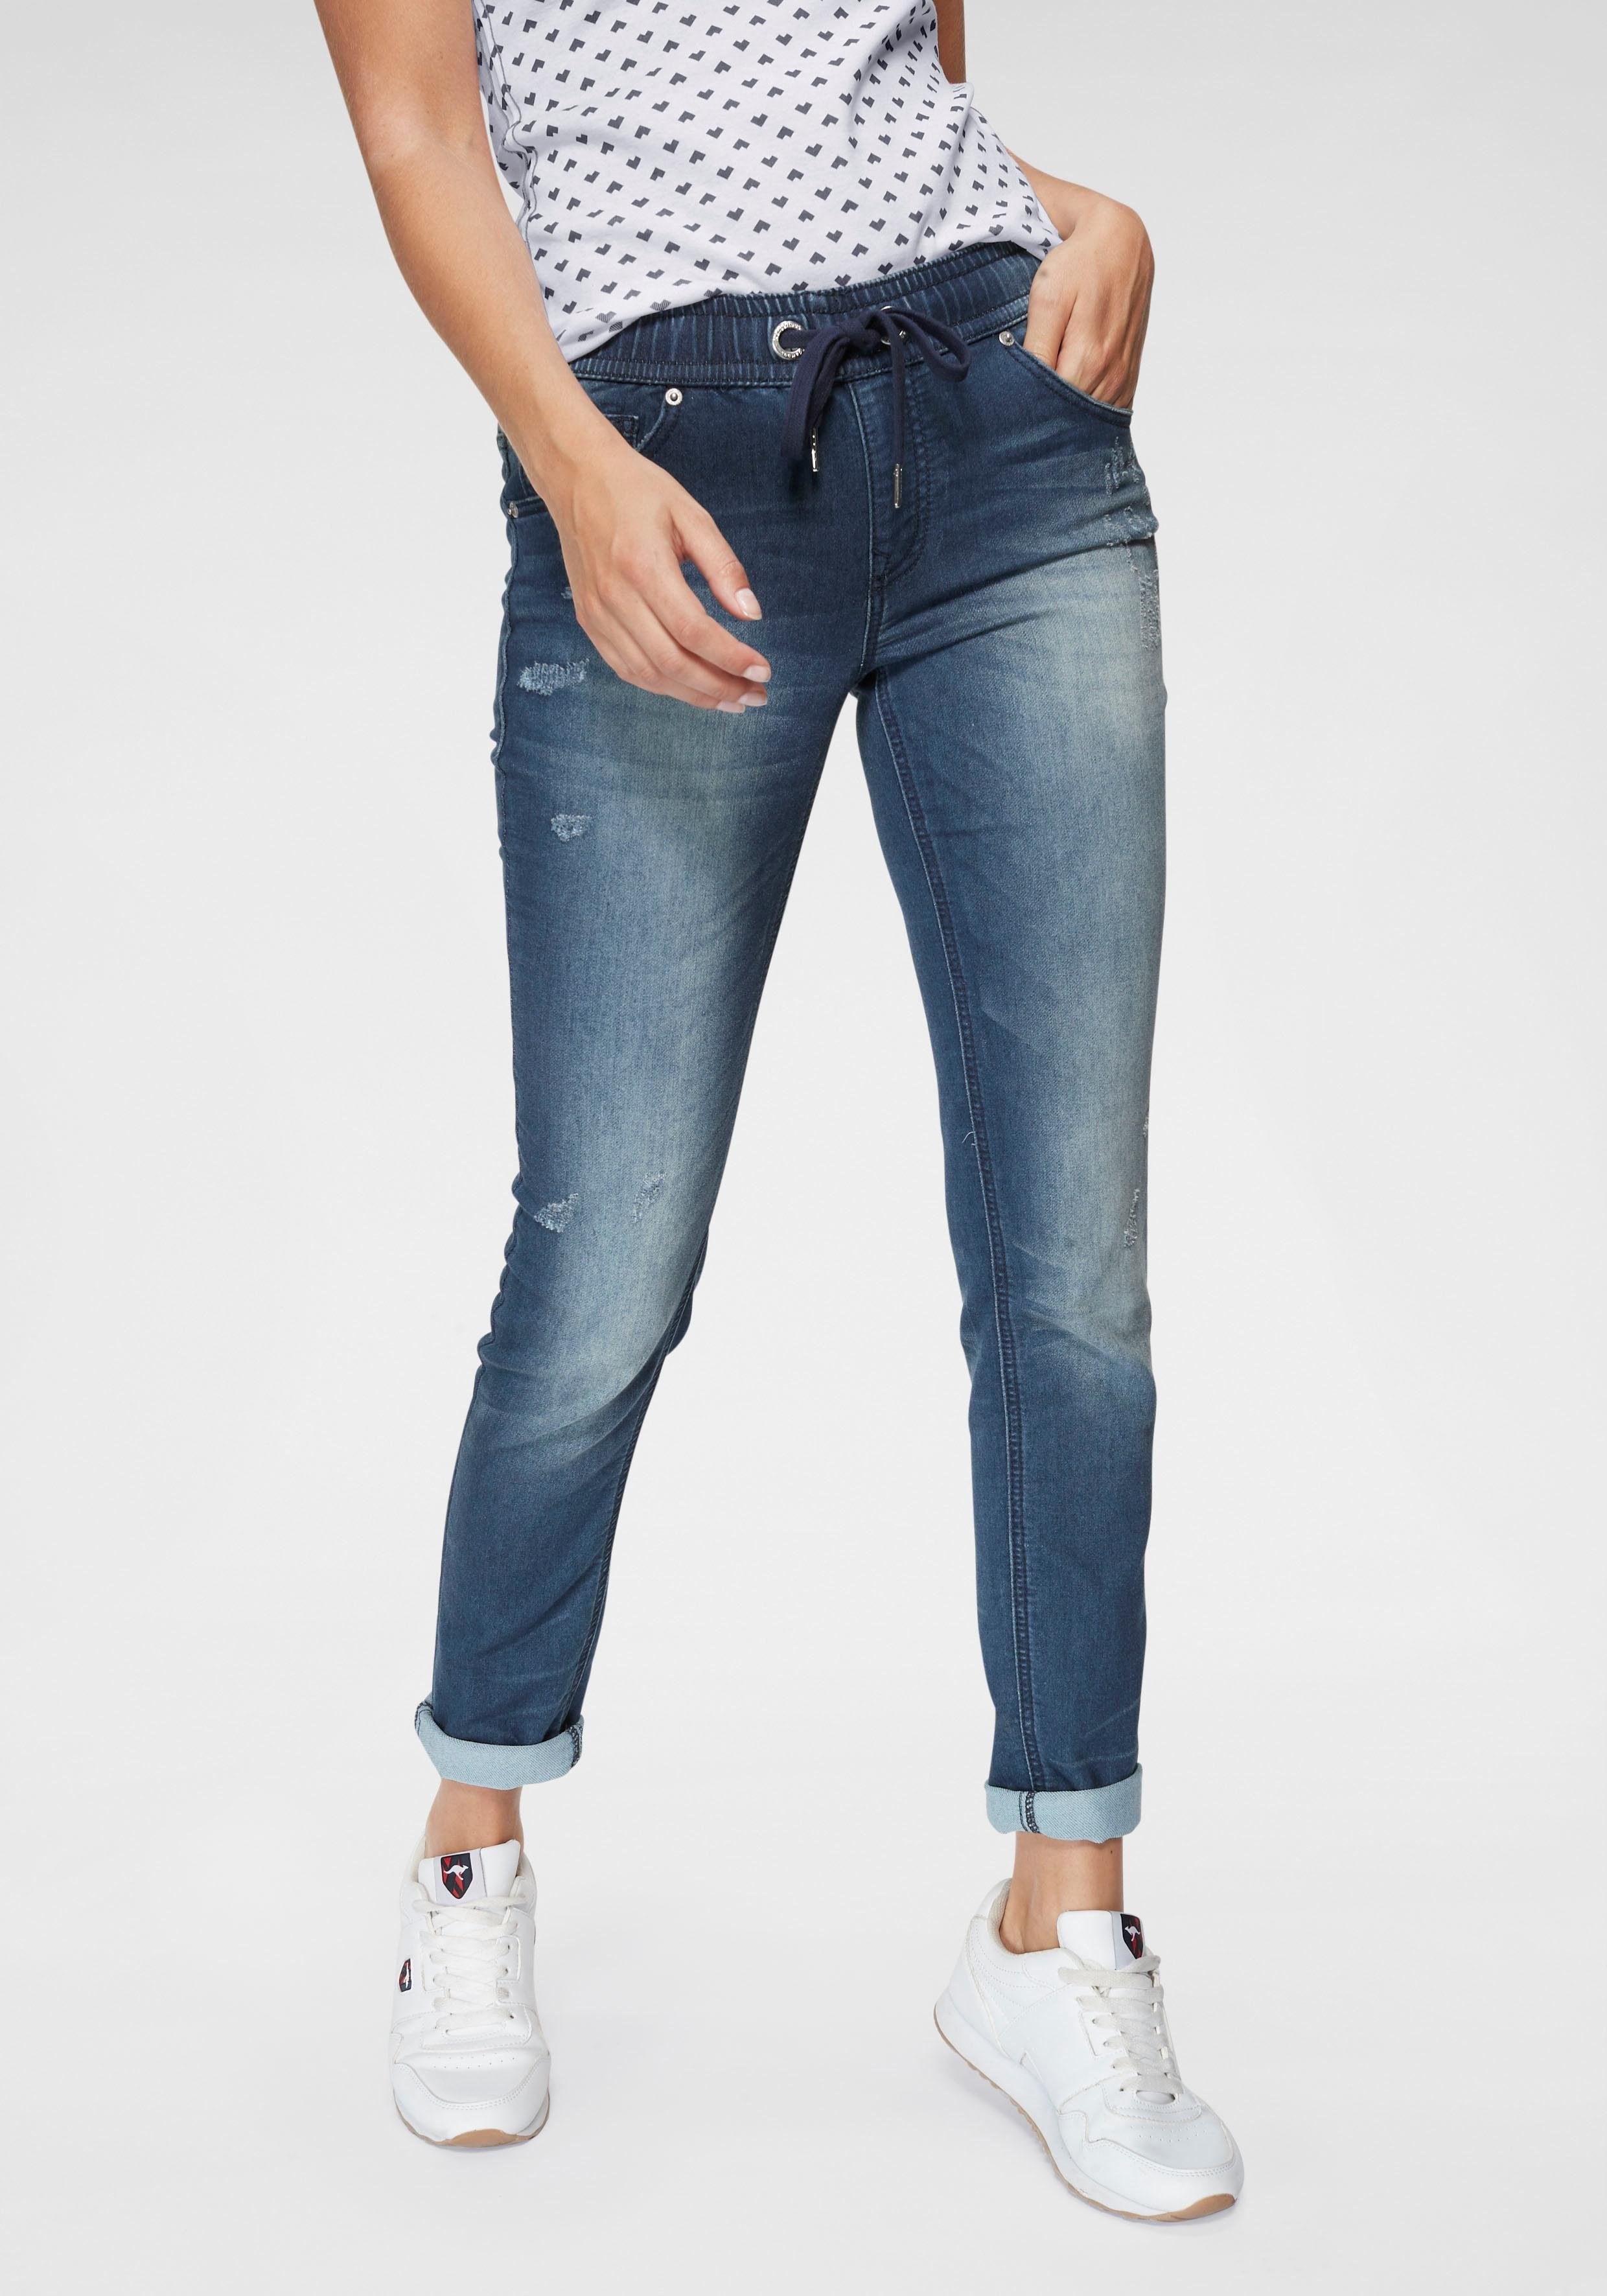 Günstige Jeans kaufen » Bis zu 40% Rabatt | OTTO